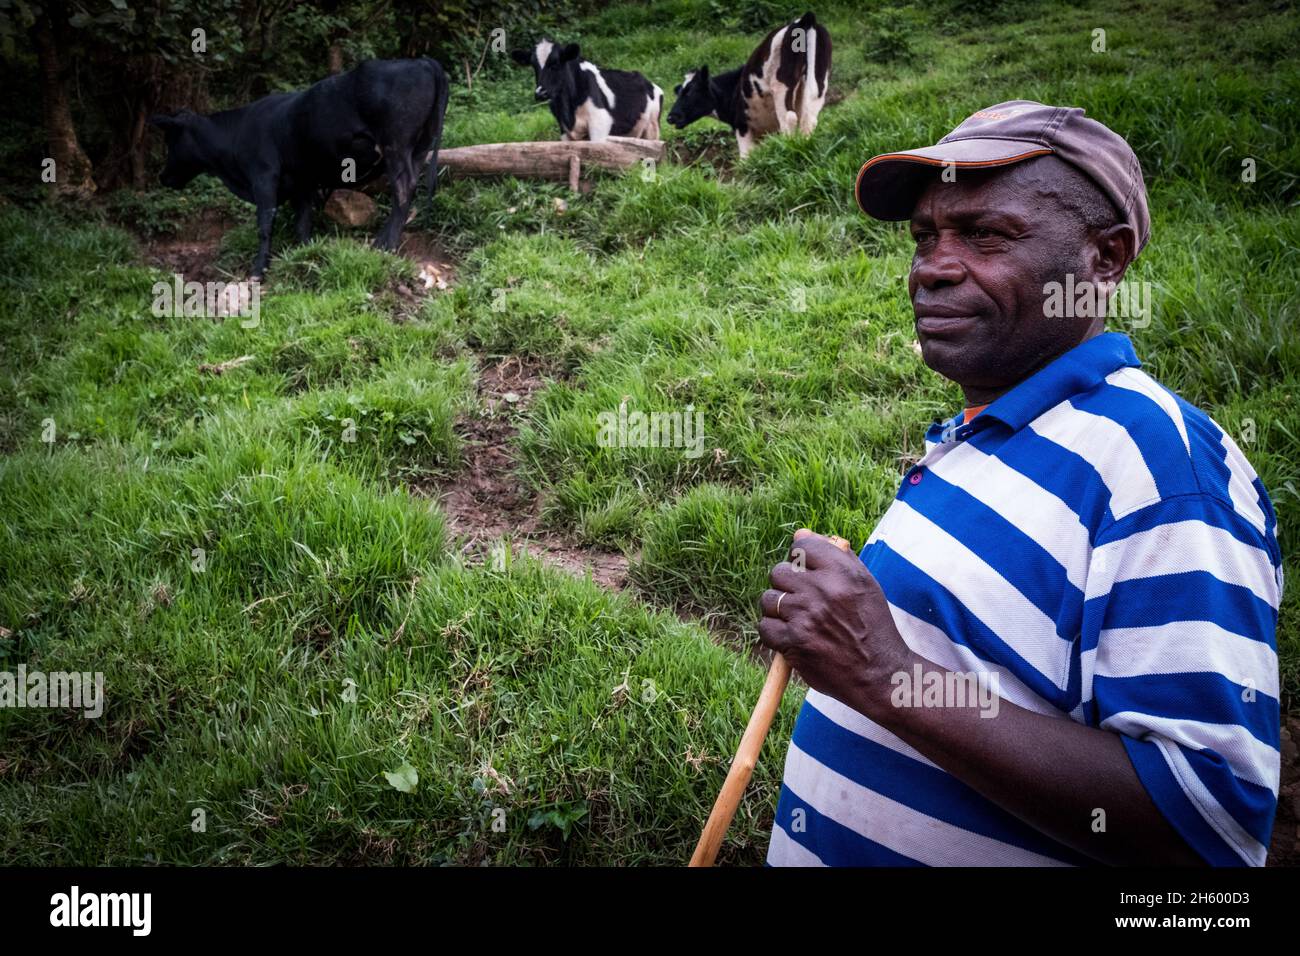 Septiembre 2017. Simeo Ntawuruhunga recibió una vaca de la Fundación para la Conservación y el Desarrollo de la Comunidad Nkuringo (NCCDF) como parte de su programa de novillas. Él cría la vaca, mantiene al becerro así comenzando a construir su manada, y pasa la vaca original a la siguiente en línea en el programa de la novilla. Ahora tiene 6 vacas que producen leche que puede vender localmente. Los toros cuando nacen son vendidos para carne. Nkuringo, Uganda. Foto de stock